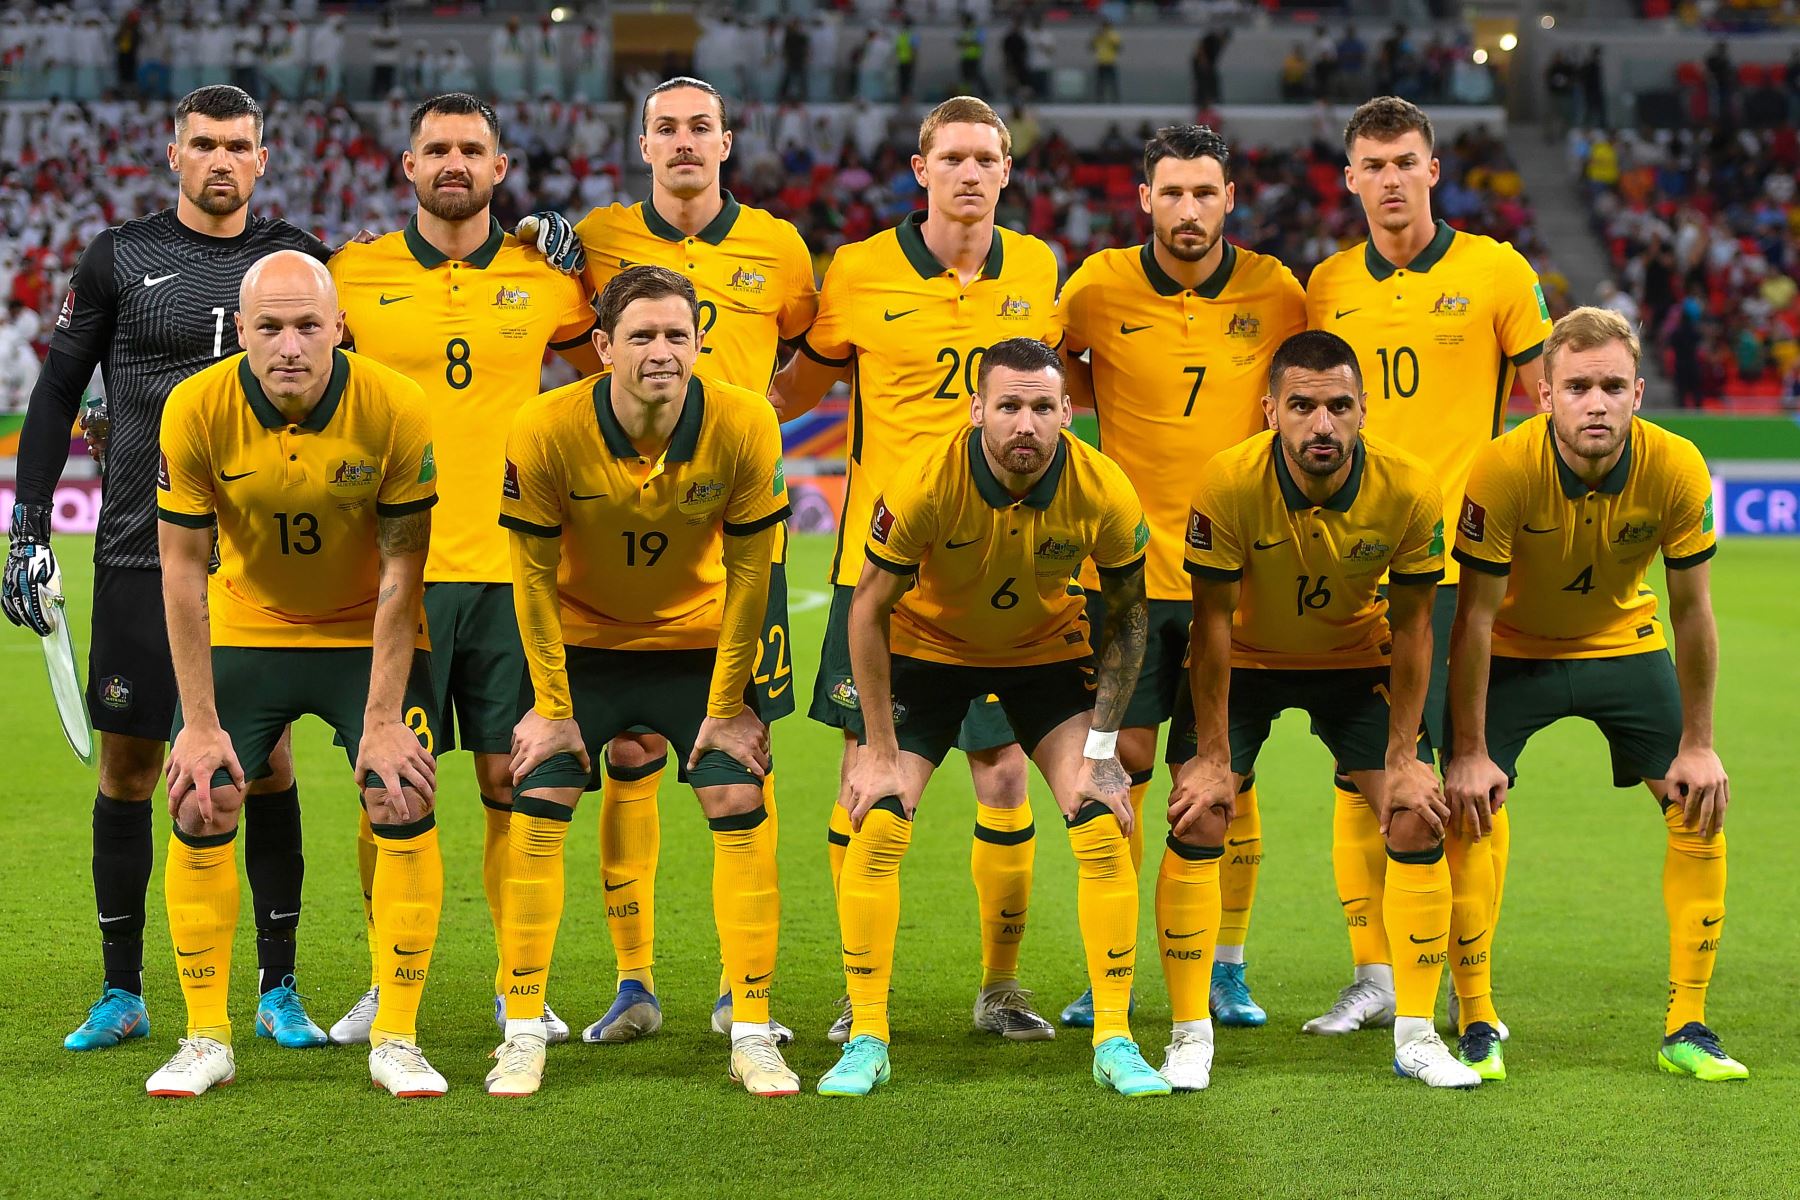 Los jugadores de Australia se alinean para el partido de fútbol de los playoffs de las eliminatorias asiáticas de la Copa Mundial de la FIFA 2022 entre los Emiratos Árabes Unidos y Australia en Al Rayyan, Qatar, el 07 de junio de 2022.